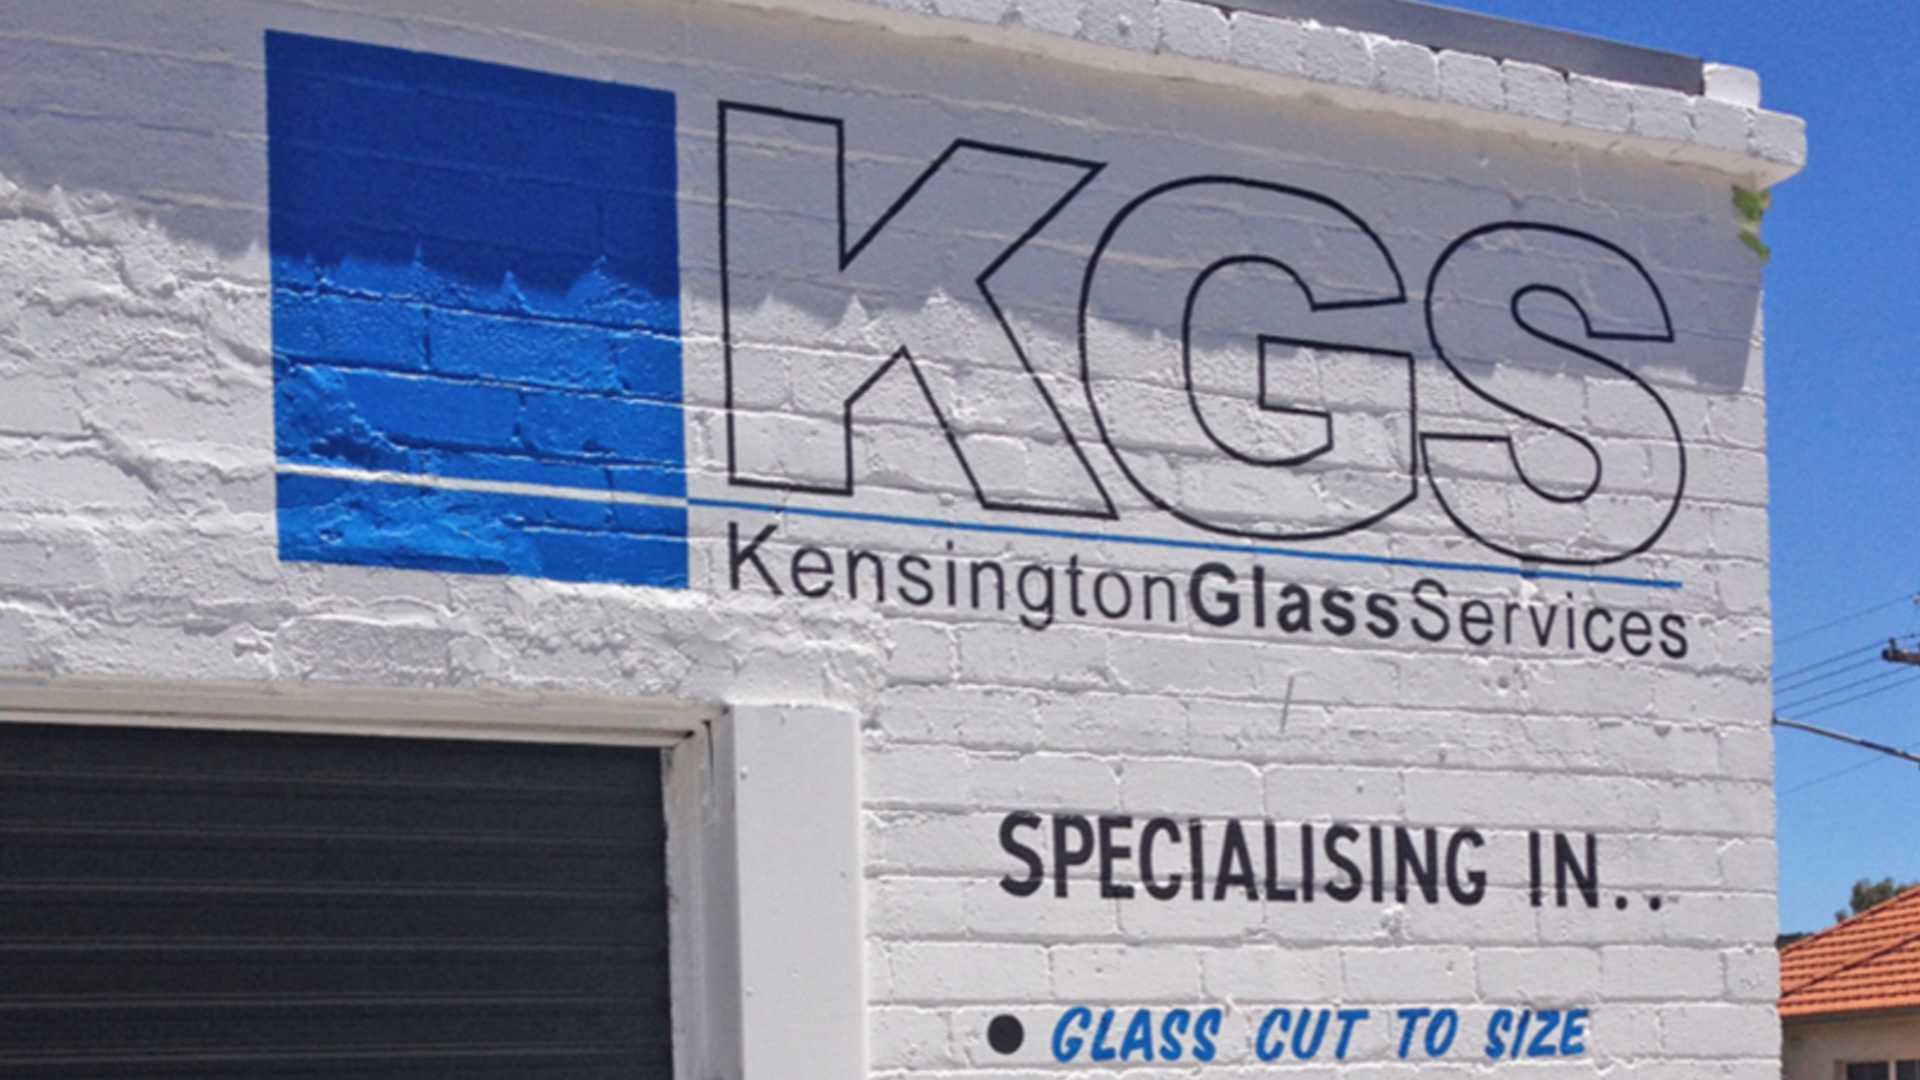 Kensington Glass Services Premises